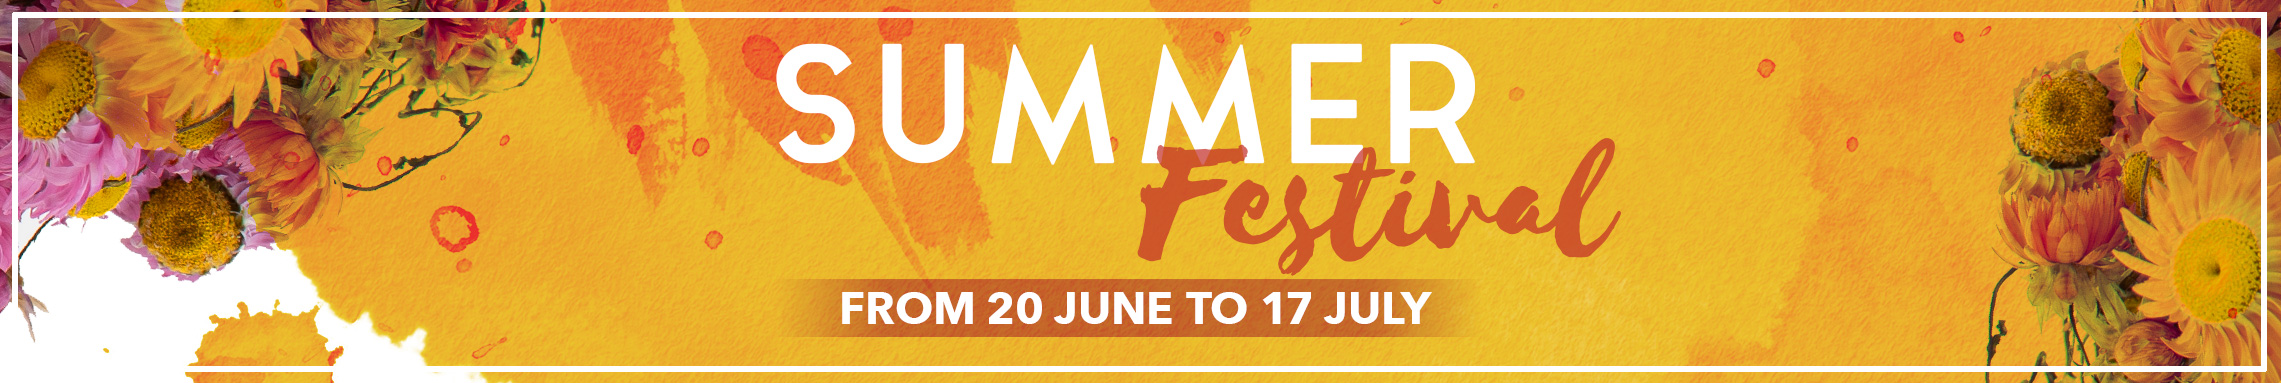 summer-festival-banner-cat-EN.jpg